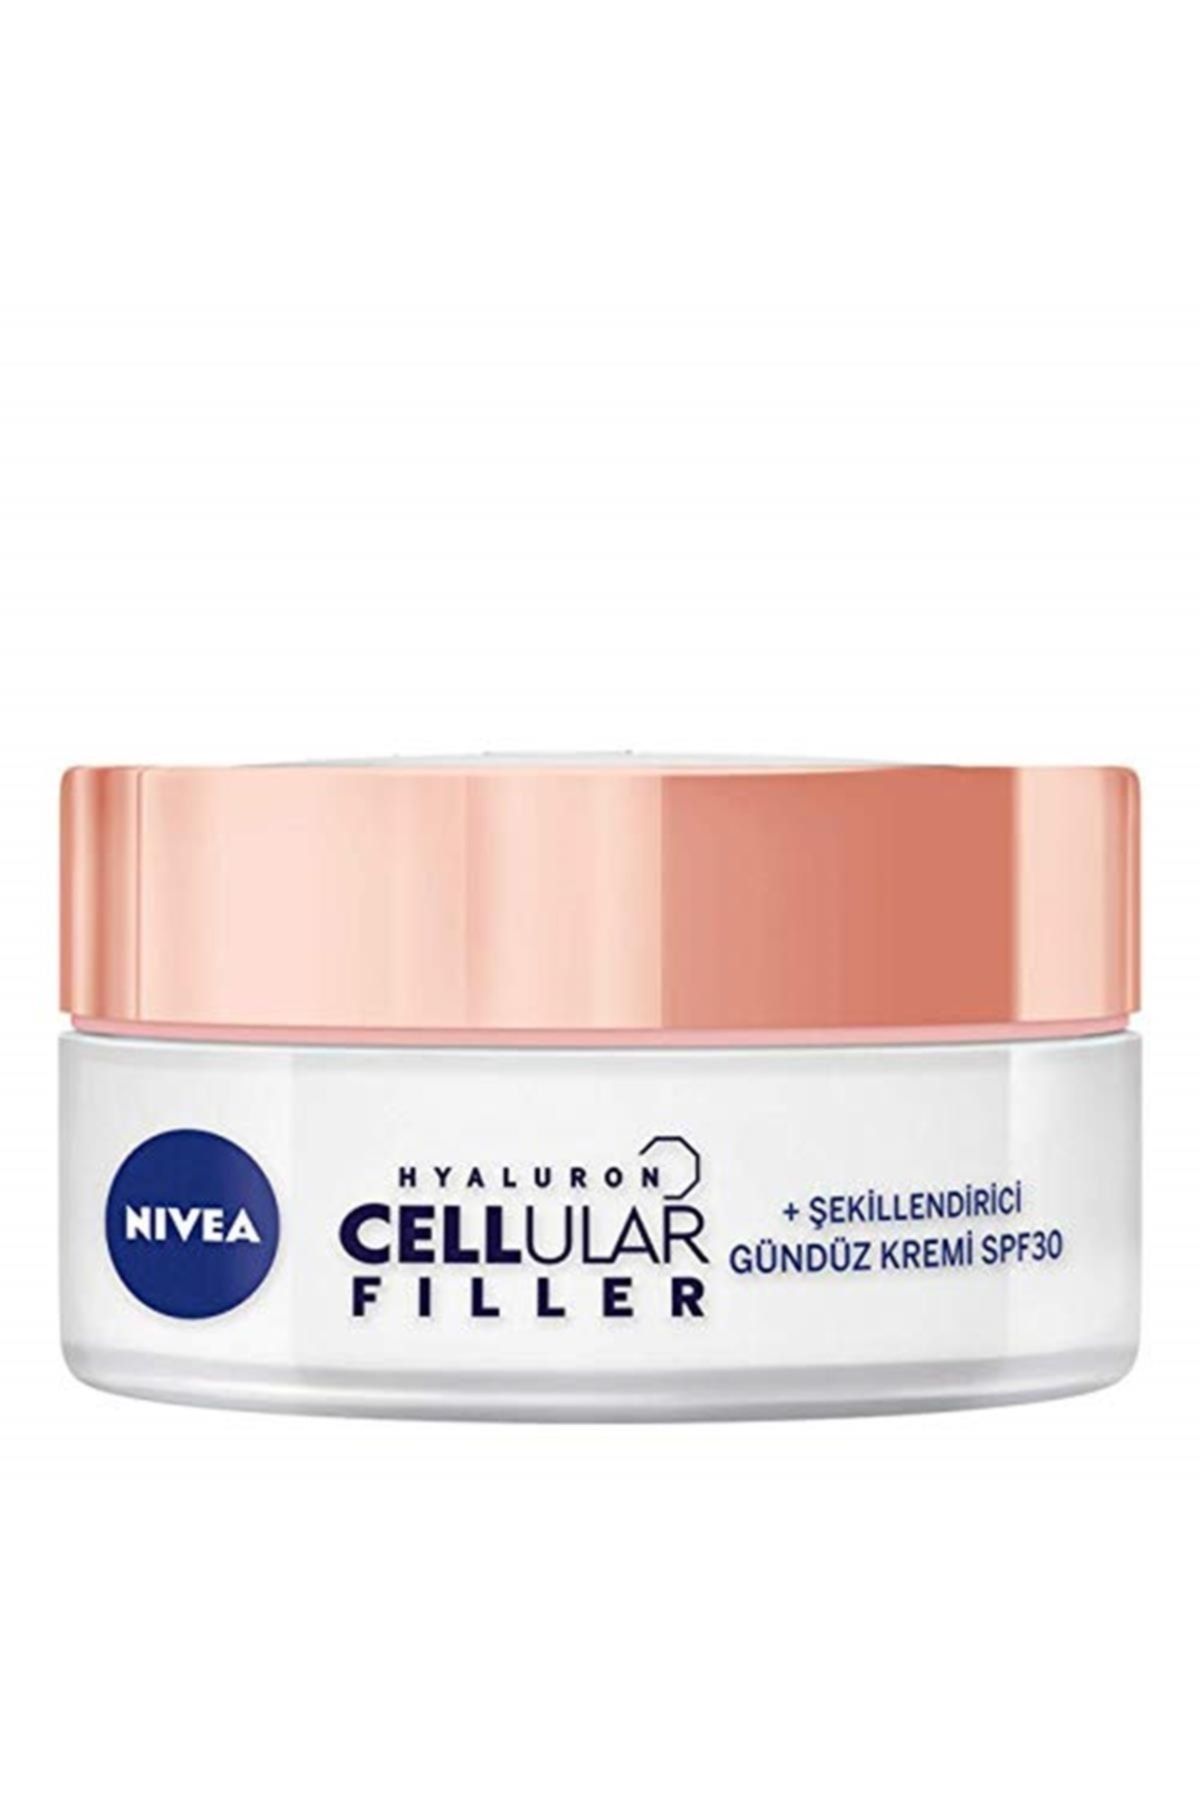 NIVEA Hyaluron Cellular Filler + Şekillendirici Yaşlanma Karşıtı Gündüz Kremi 50 ml